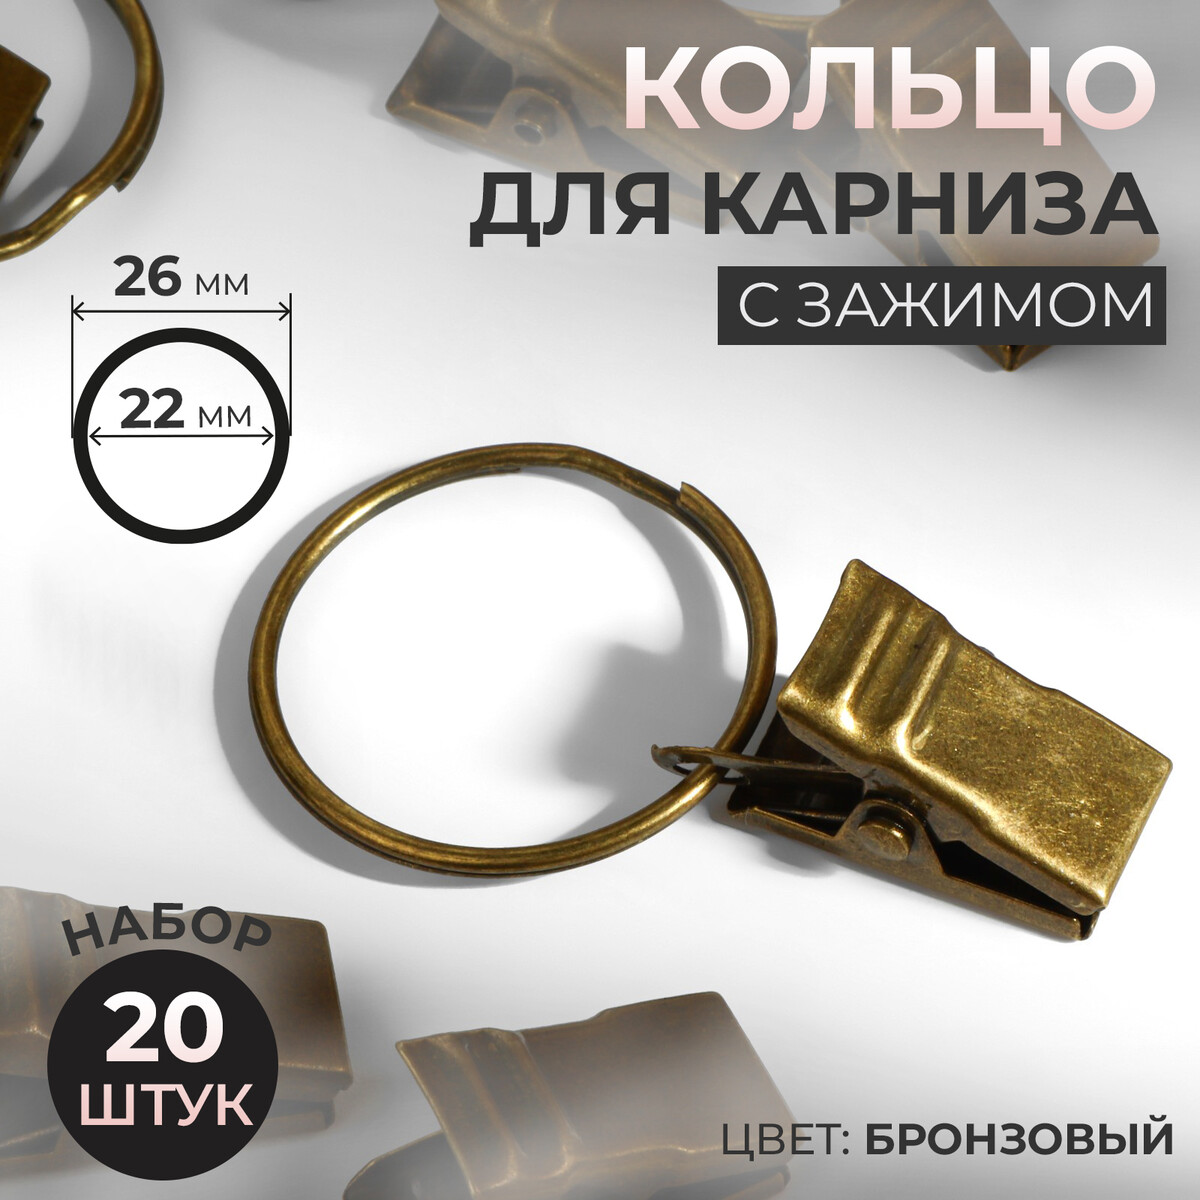 Кольцо для карниза, с зажимом, d = 22/26 мм, 20 шт, цвет бронзовый золотое кольцо